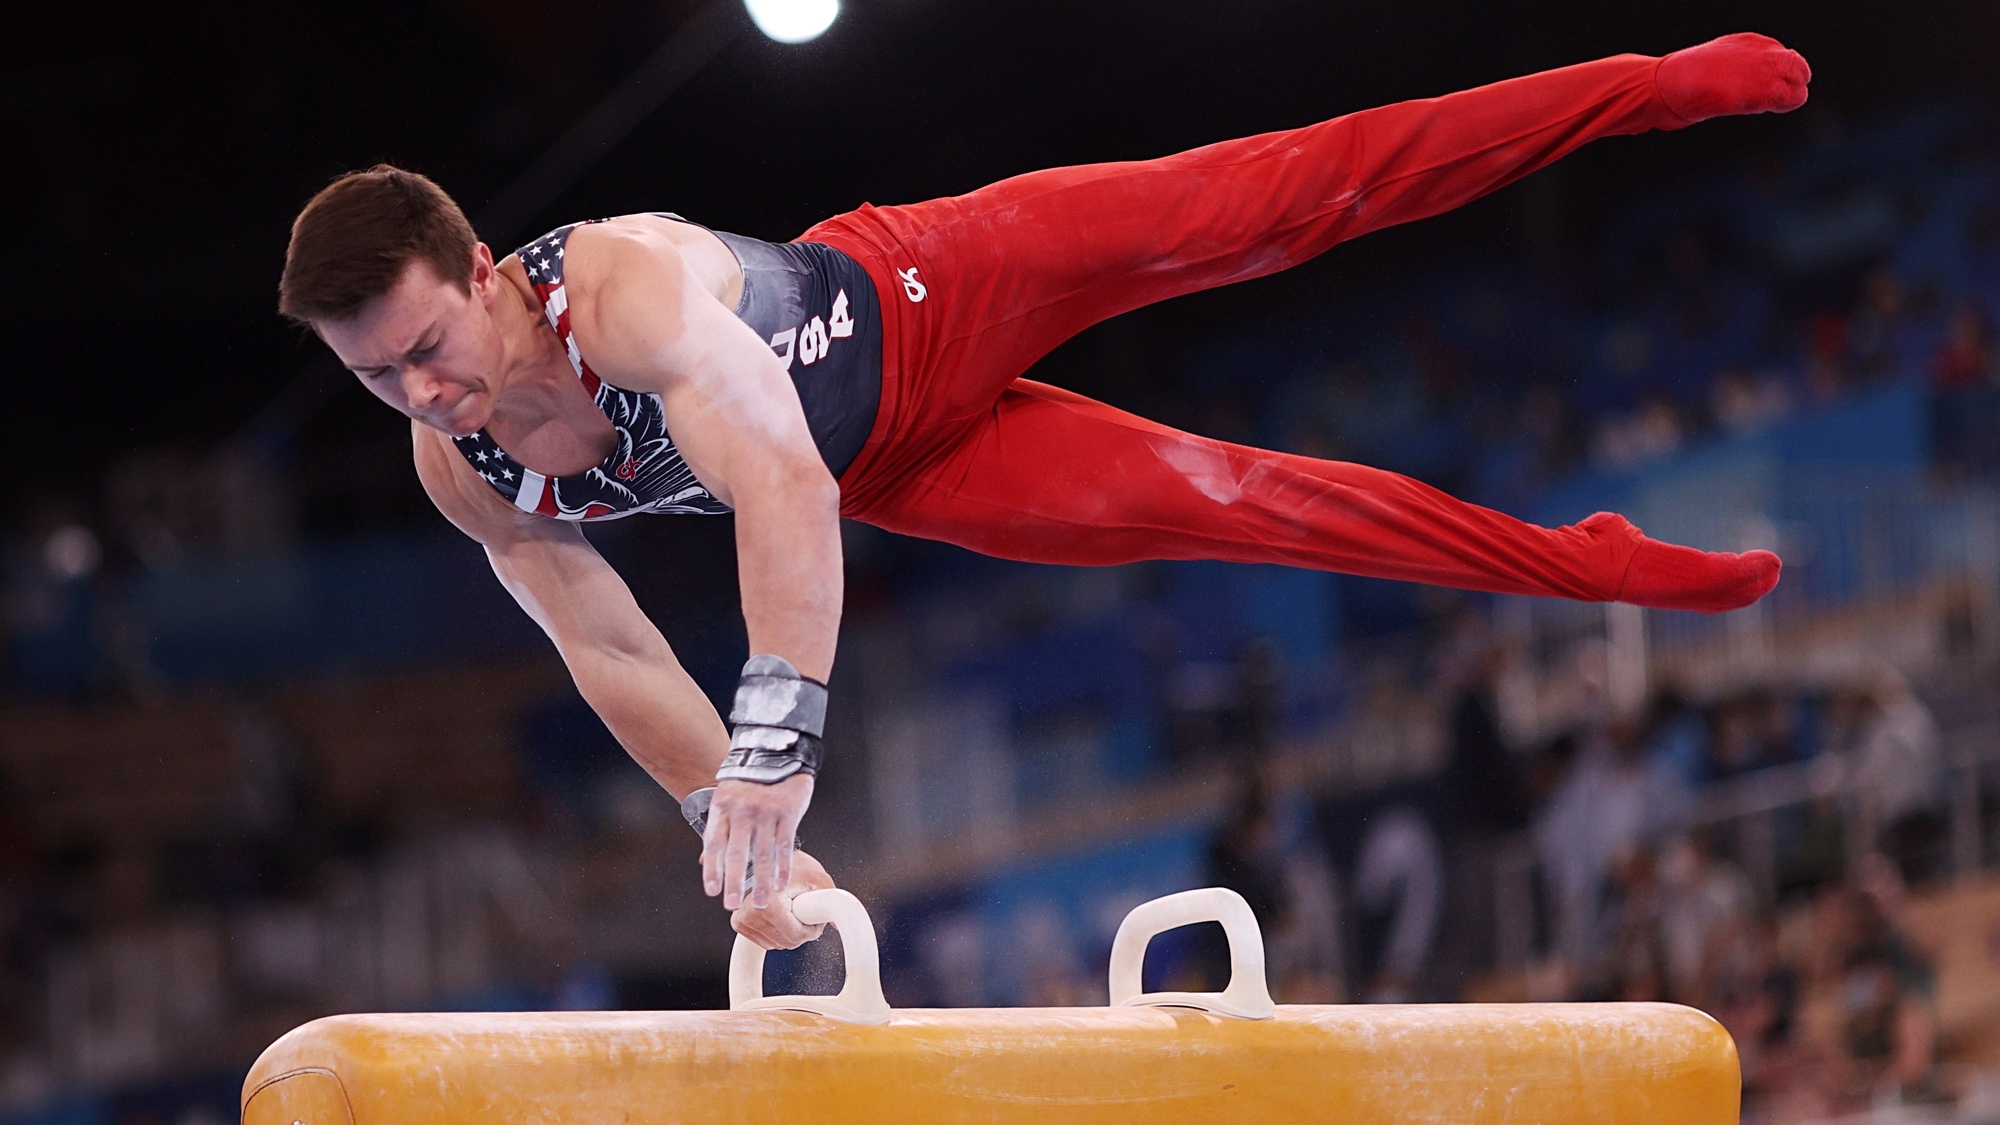 Men's gymnastics olympic trials